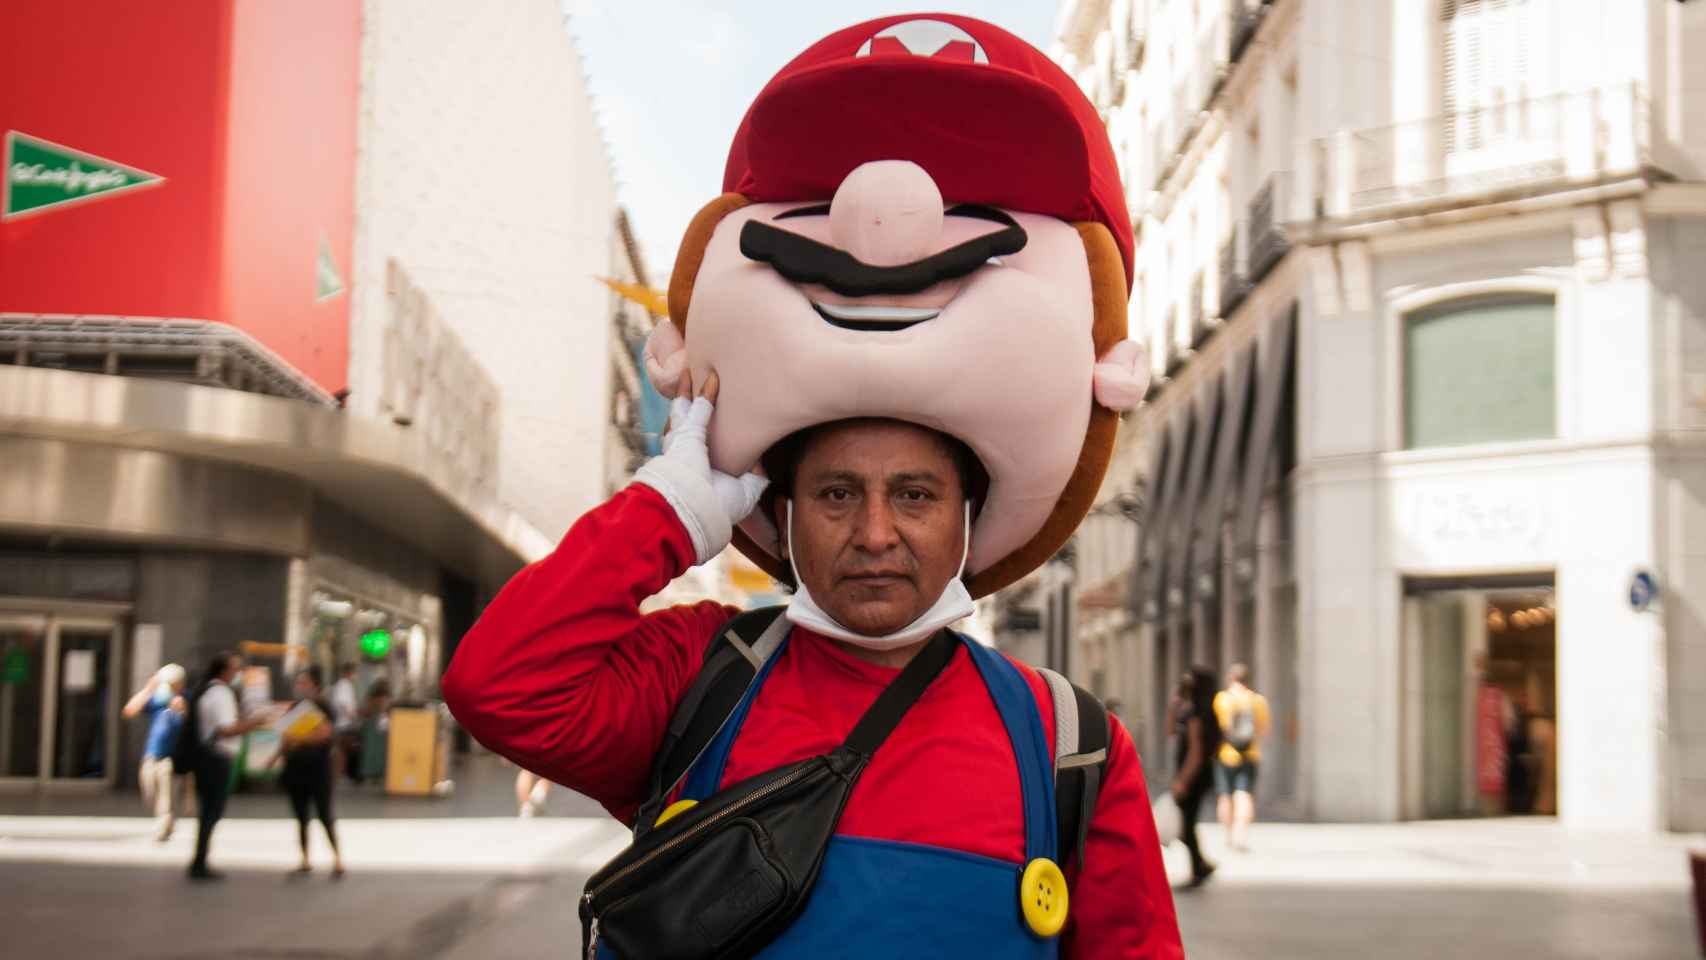 Mayer, peruano de 52 años, con su disfraz de Mario.